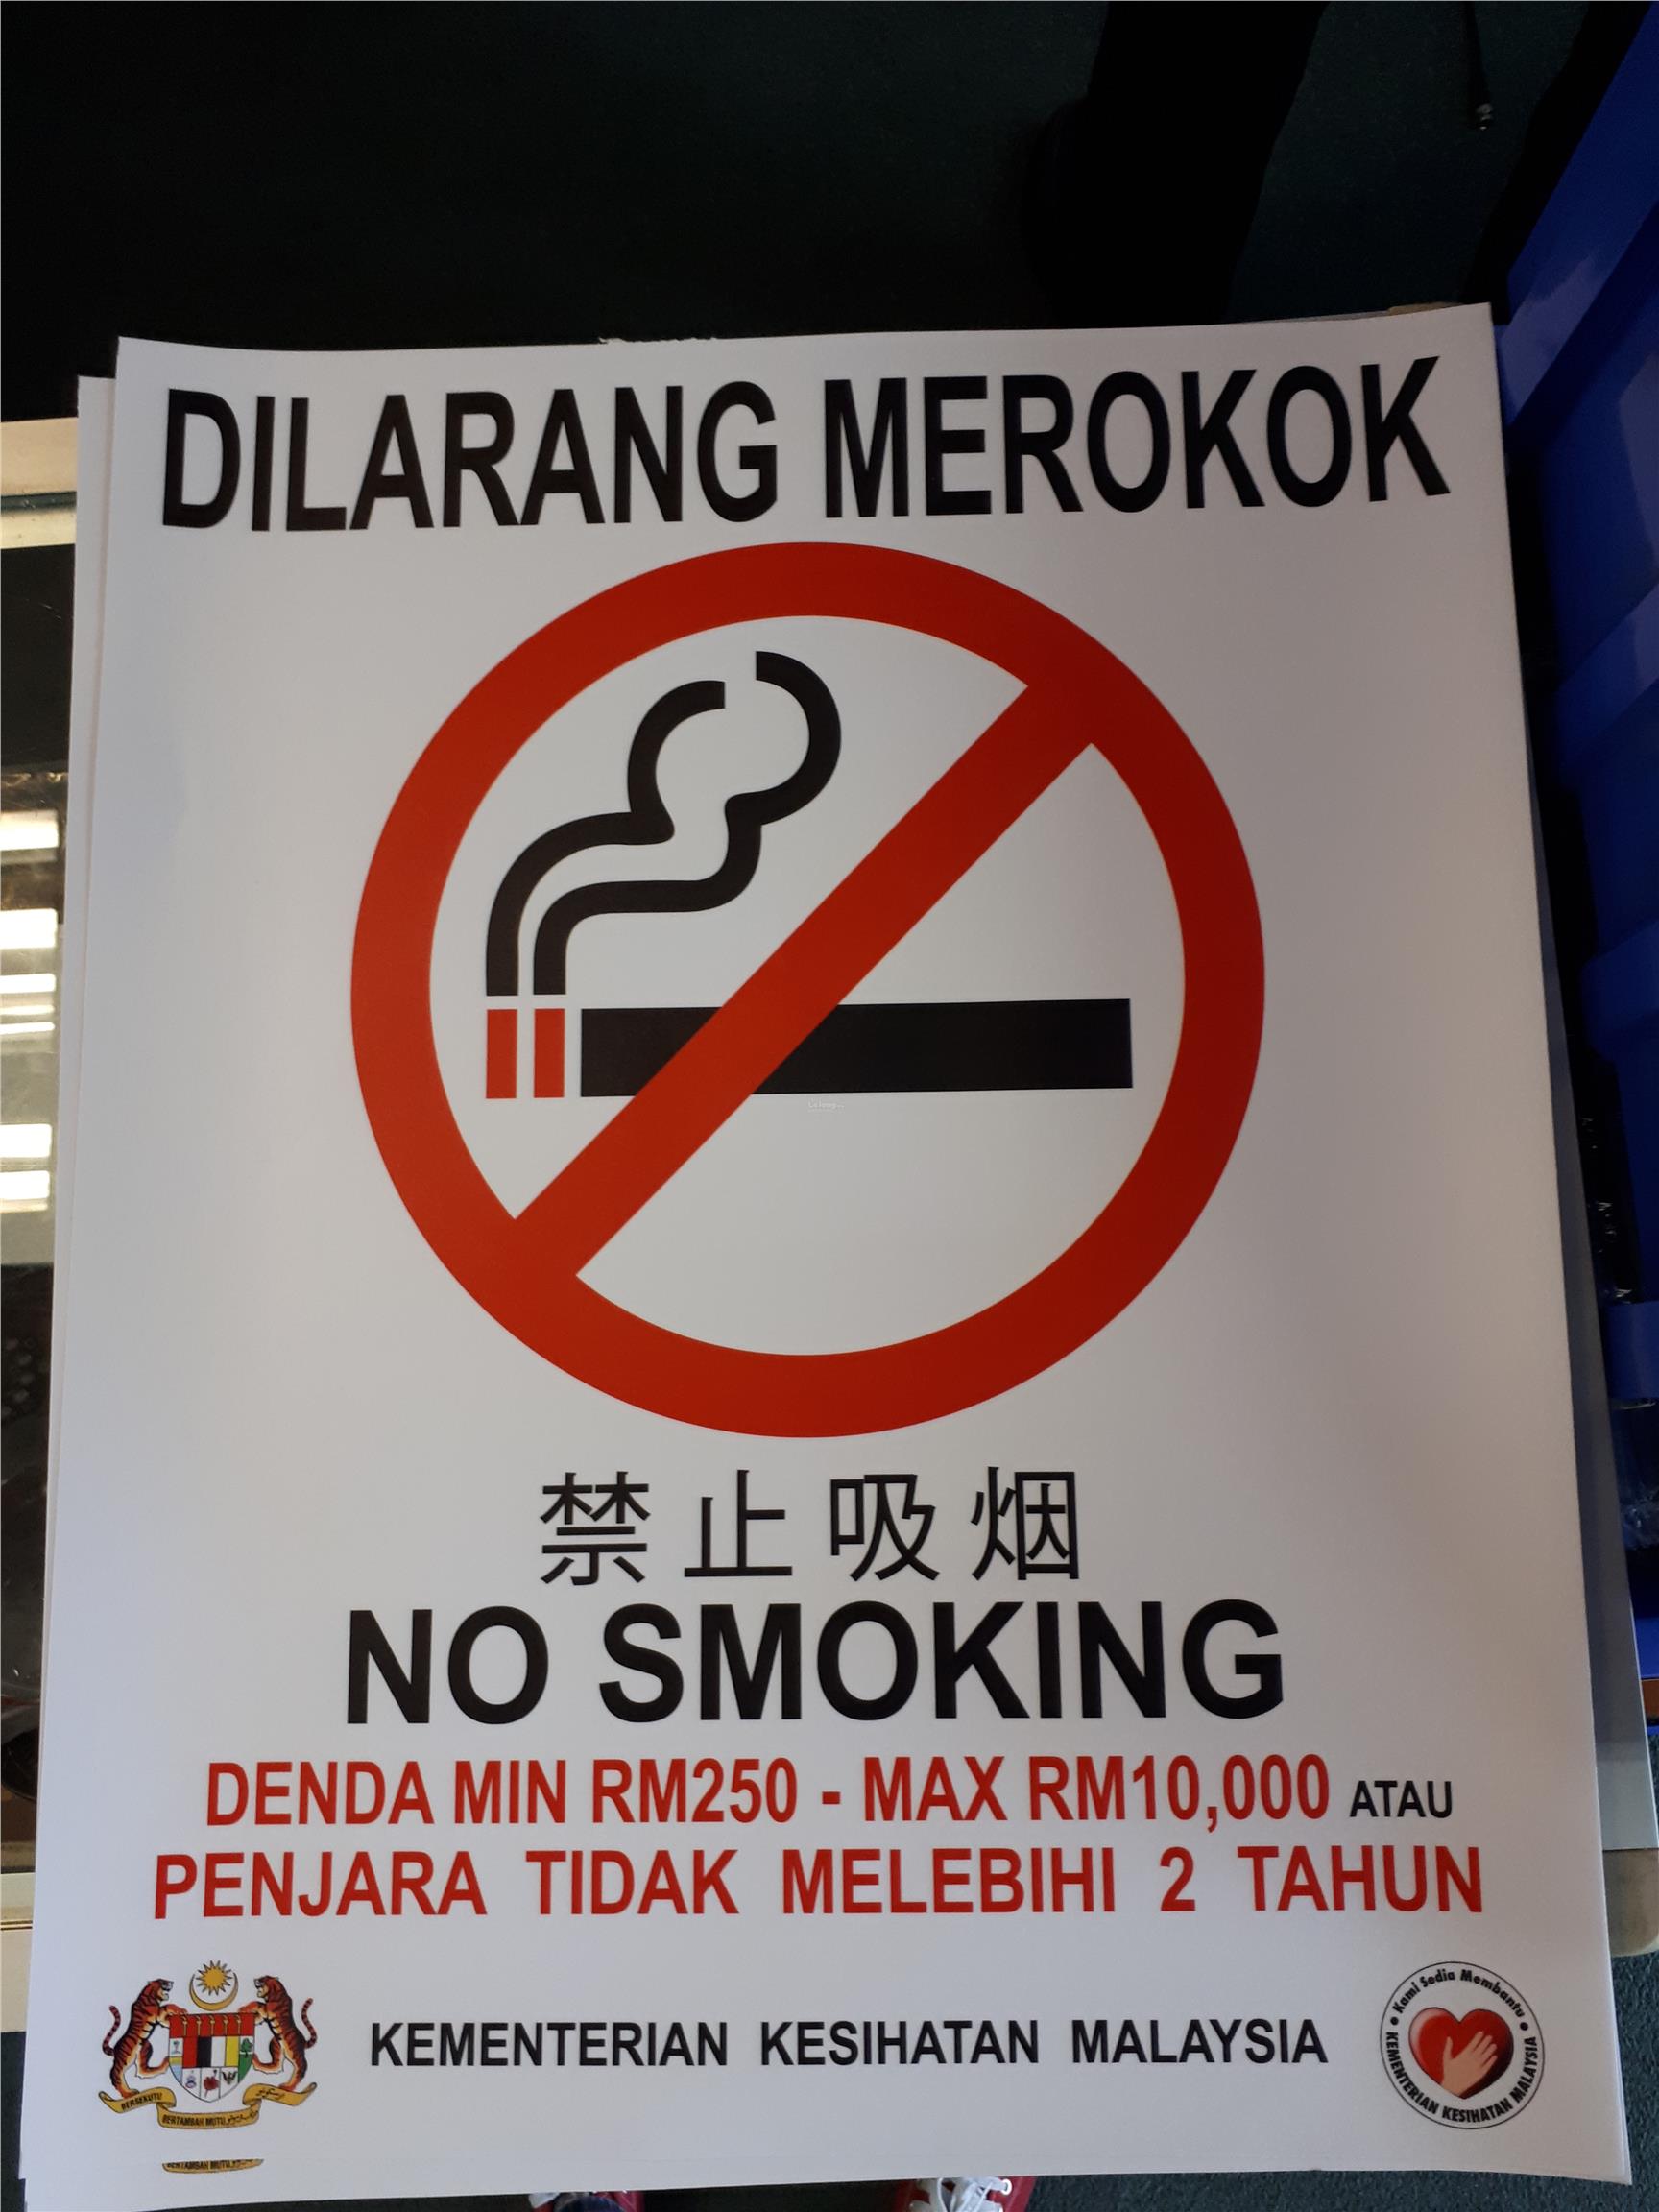  DILARANG  MEROKOK  NO SMOKING SIGN S  end 1 4 2021 11 15 AM 